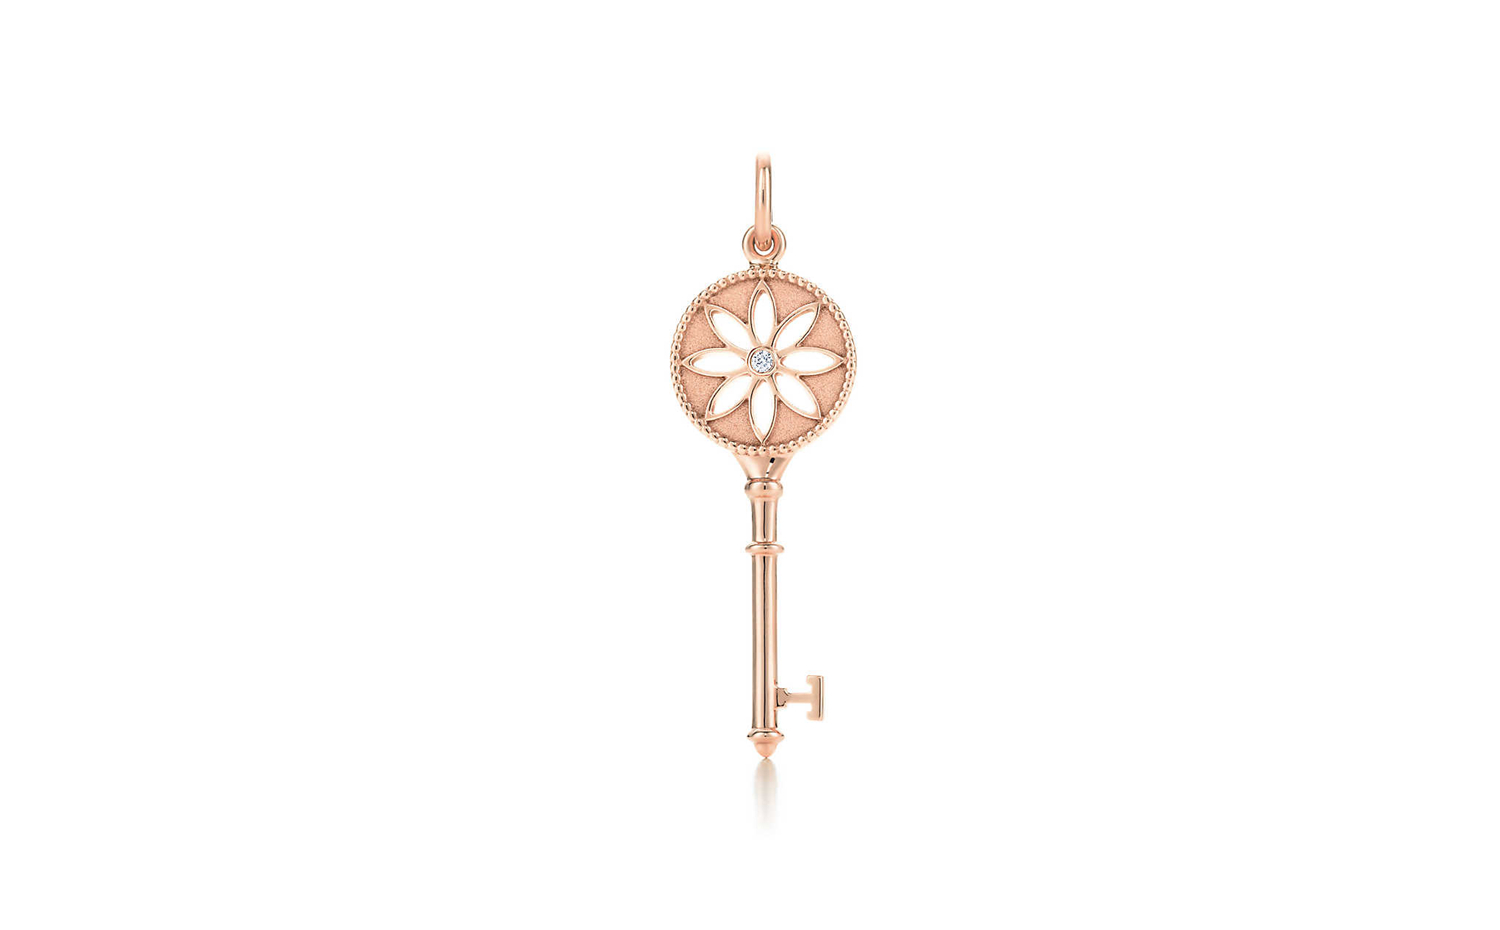 Tiffany Keys Daisy Key Pendant in Rose Gold with Diamond